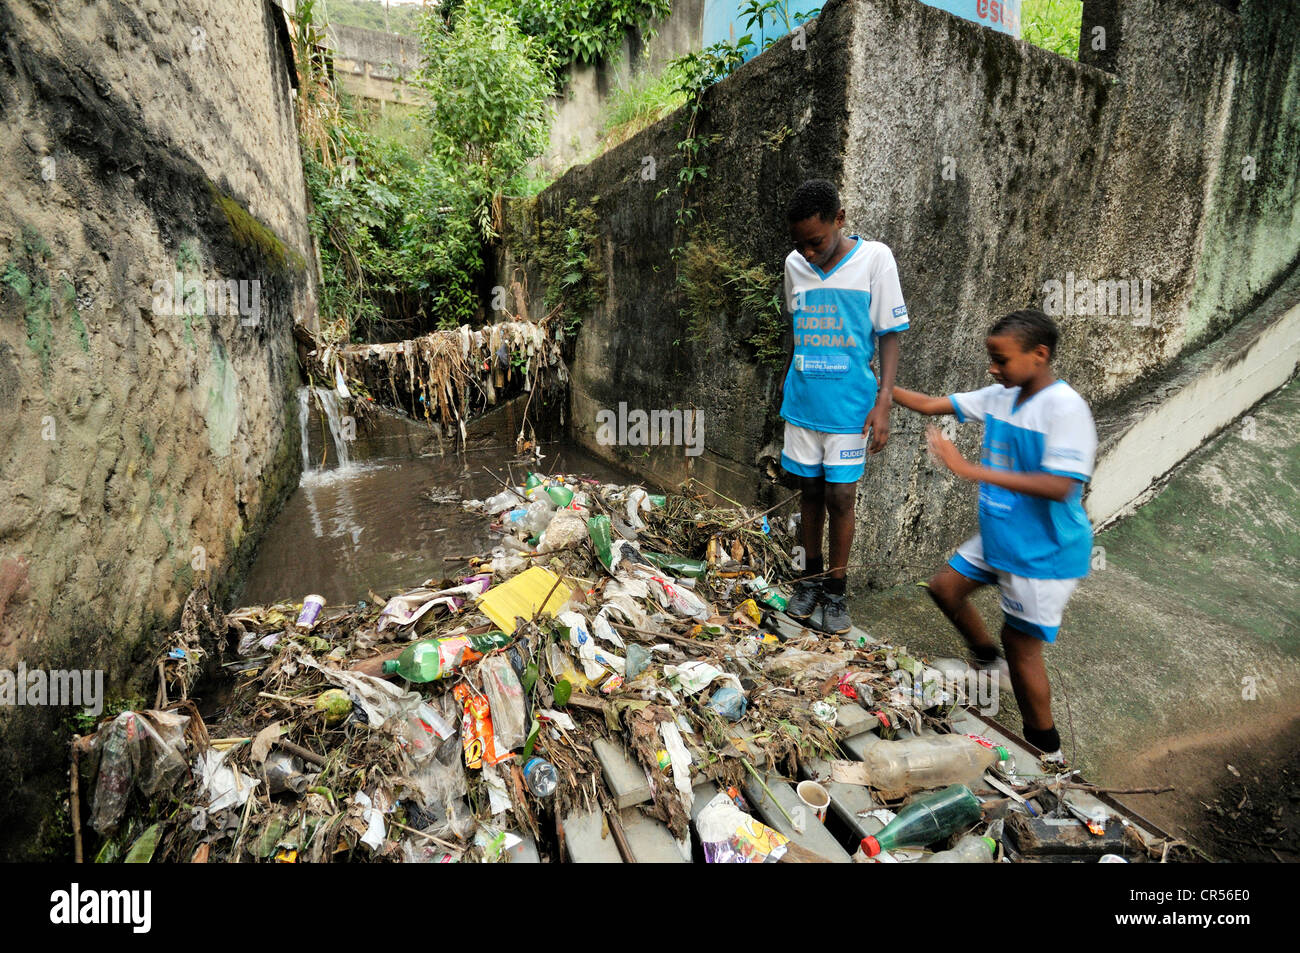 Les résidents du bidonville district de Favela Morro da Formiga debout à côté de déchets dans un canal d'égout exposés, quartier de Tijuca Banque D'Images